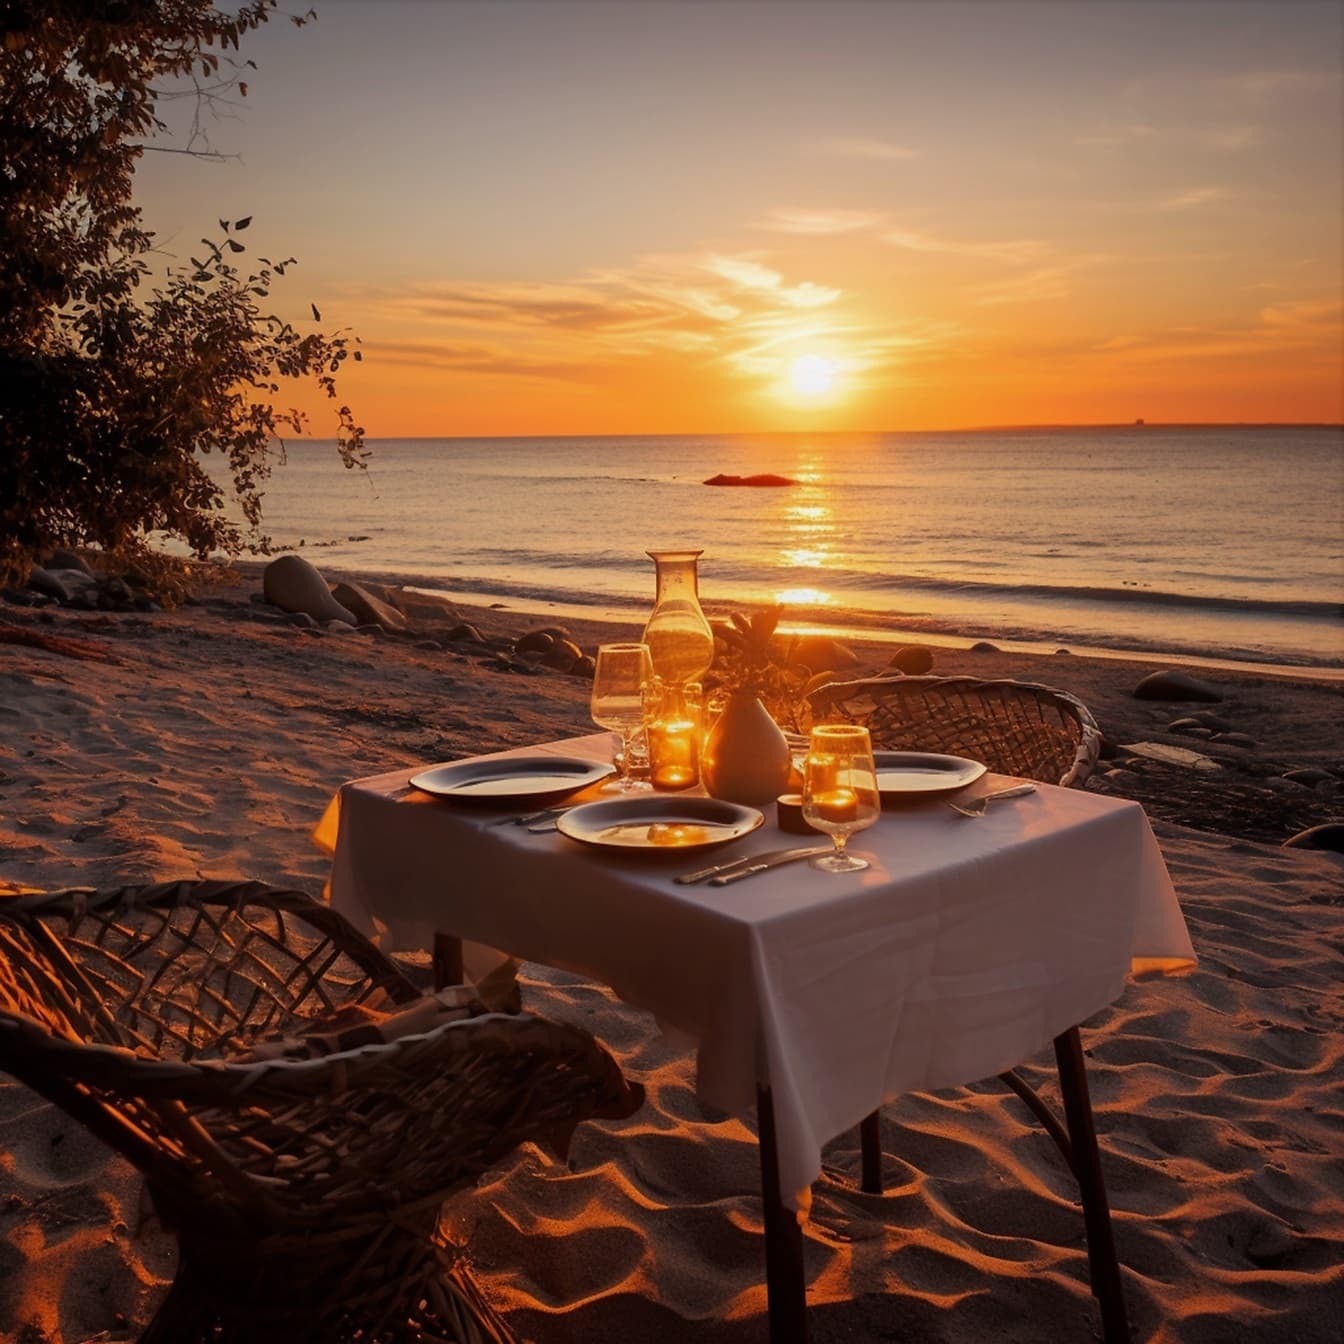 Meja makan romantis di tepi pantai yang indah saat matahari terbenam